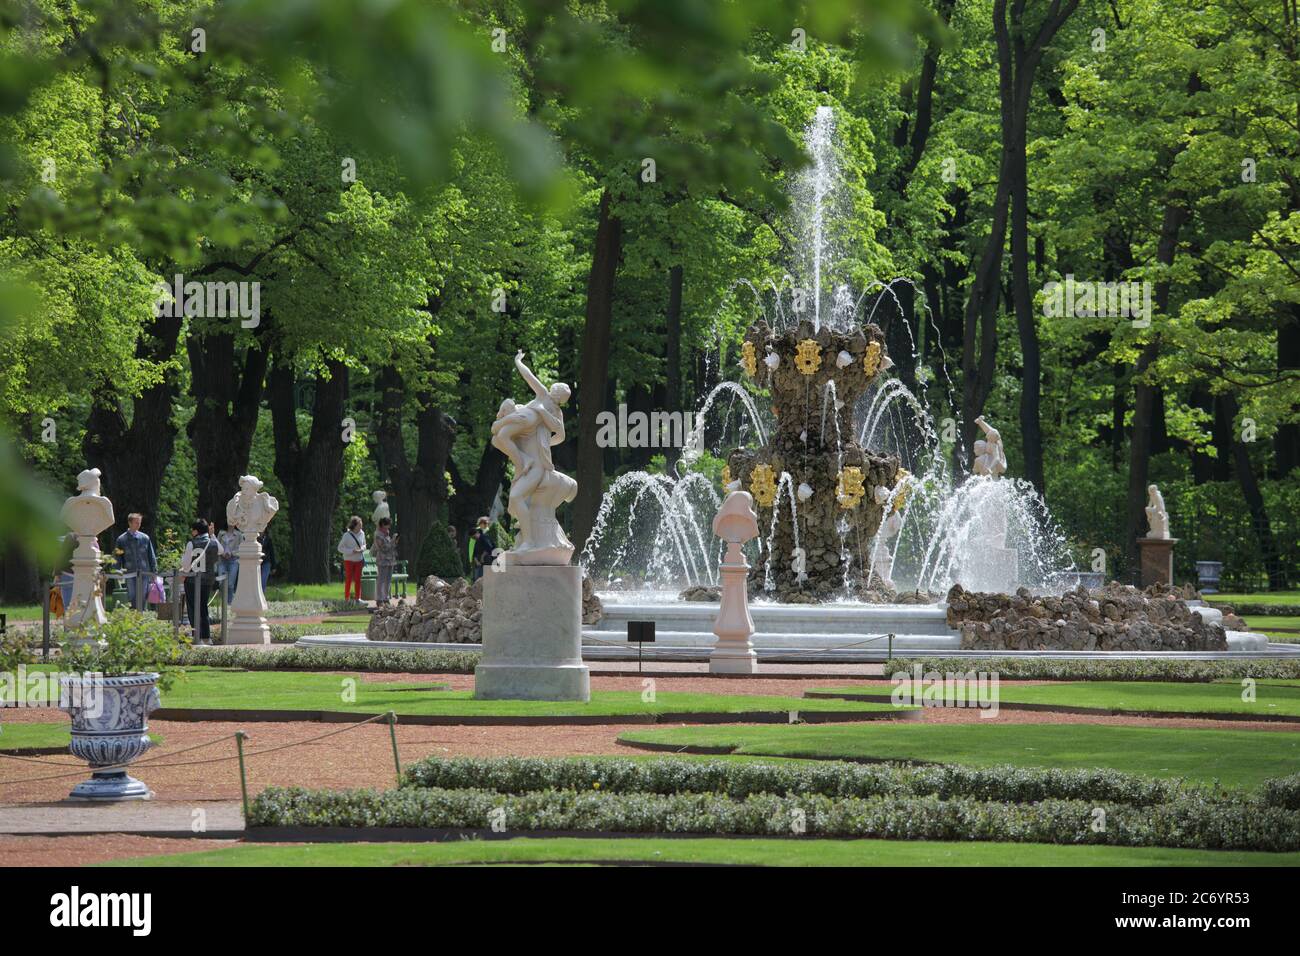 San Pietroburgo, Russia - 19 maggio 2018: Persone che camminano alla fontana nel Giardino d'Estate. Fondato nel 1704, il giardino è il luogo preferito per il tempo libero nel cuore della città Foto Stock